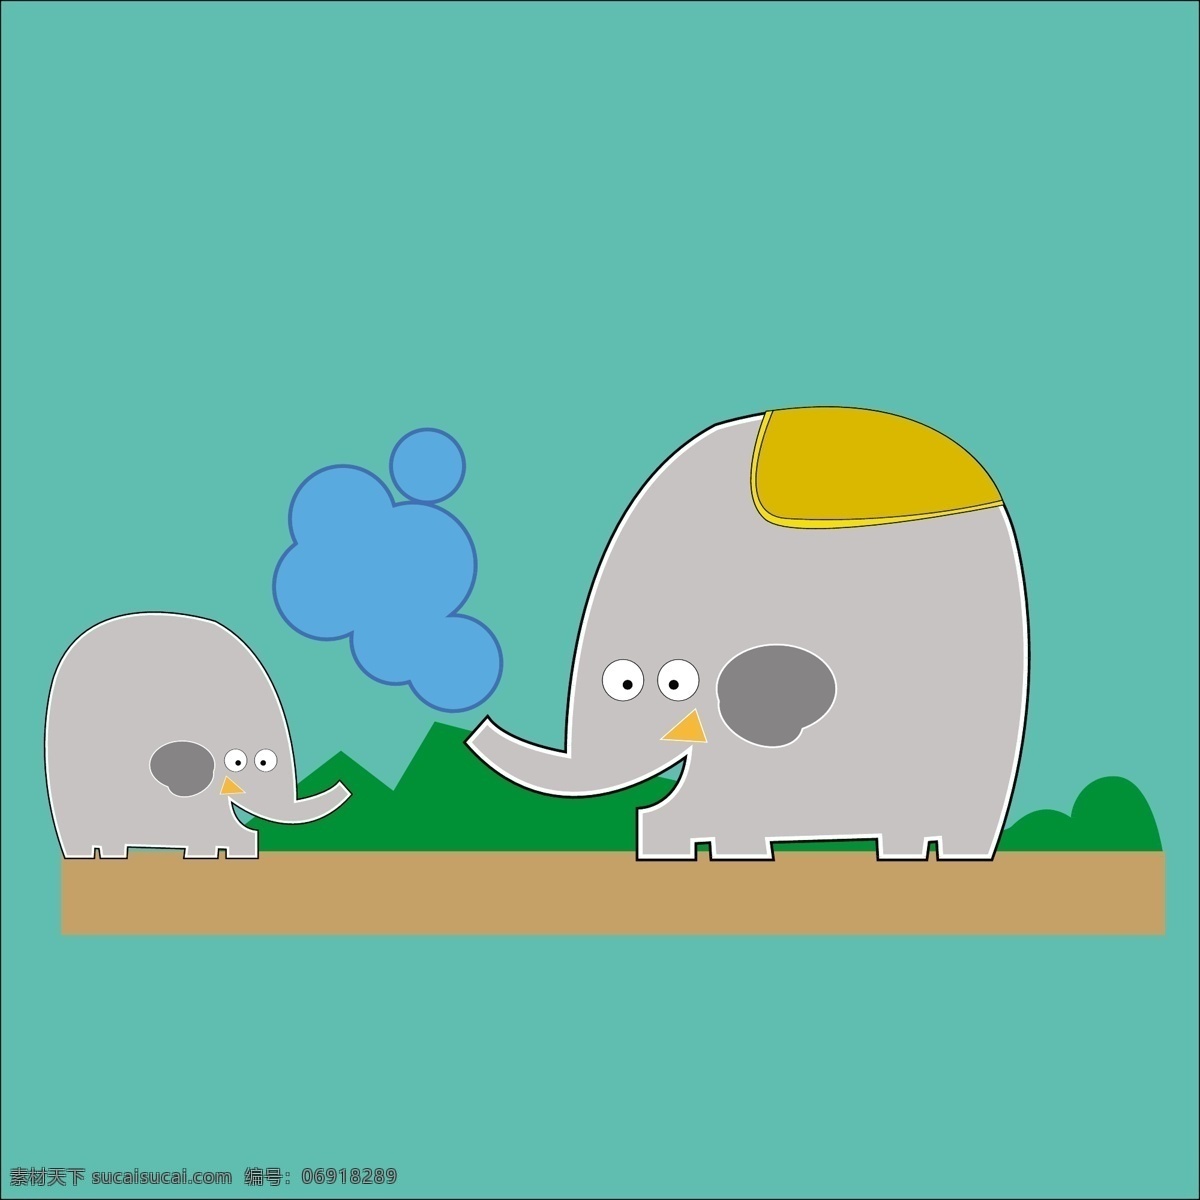 灰色 母亲 儿子 大象 玩 蓝色 绿色 砂 母子 两个